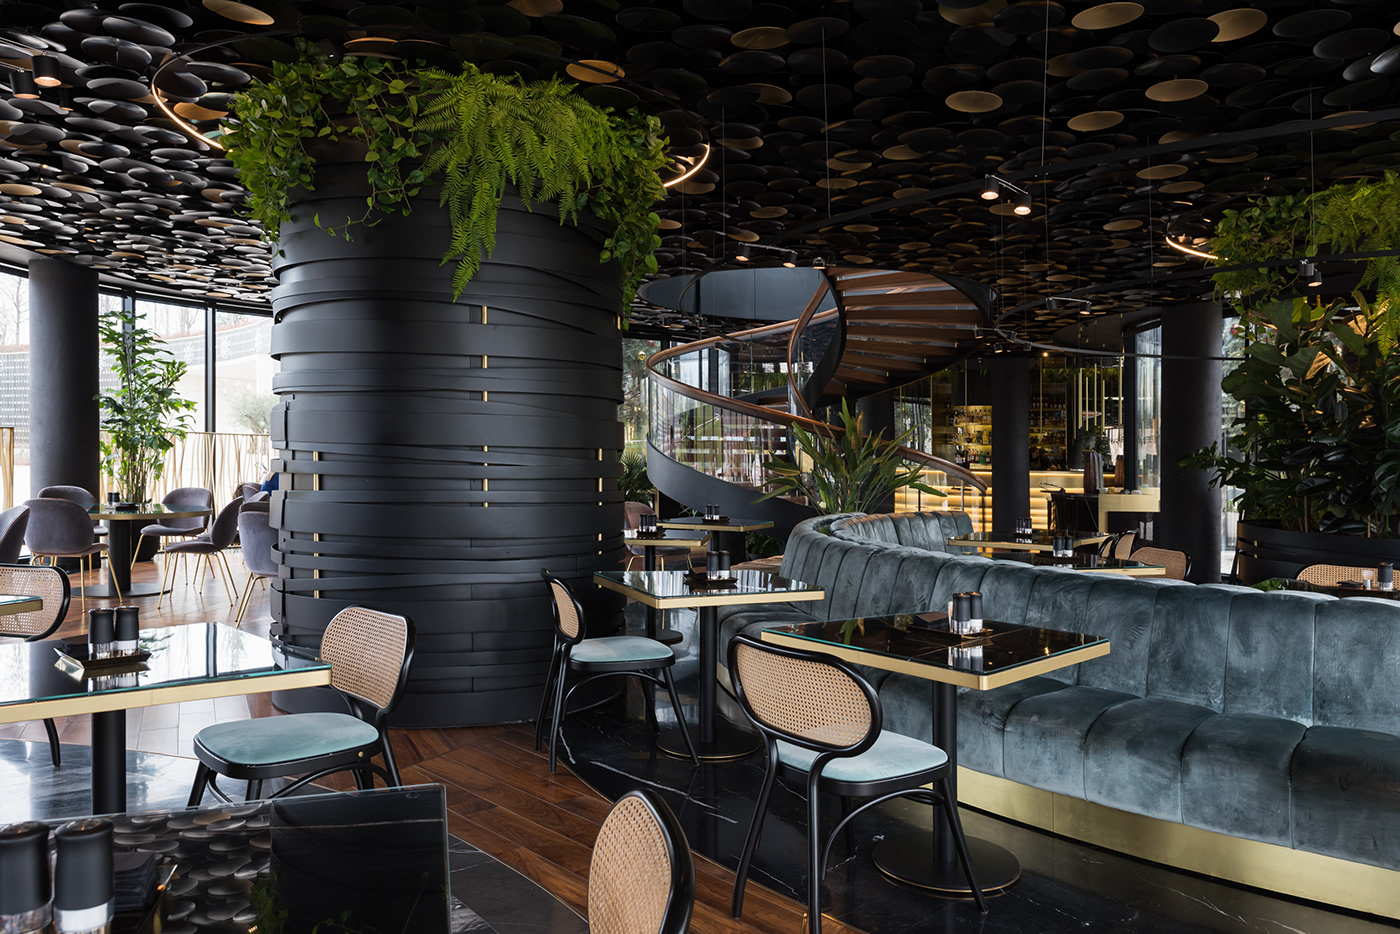 architecture bar cafe Interior interior design  restaurant